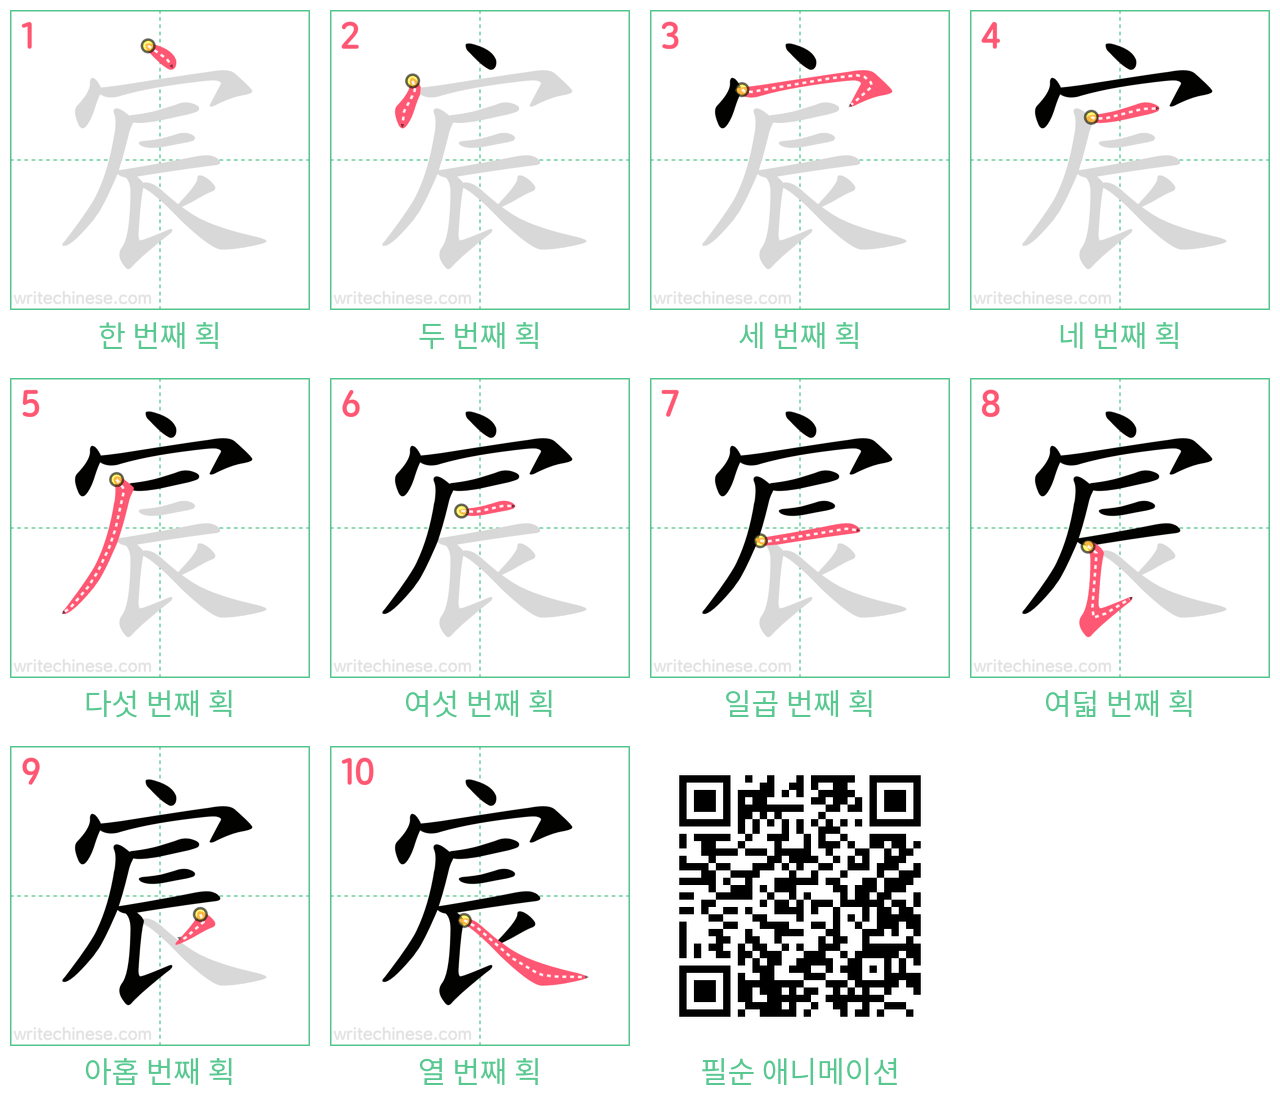 宸 step-by-step stroke order diagrams